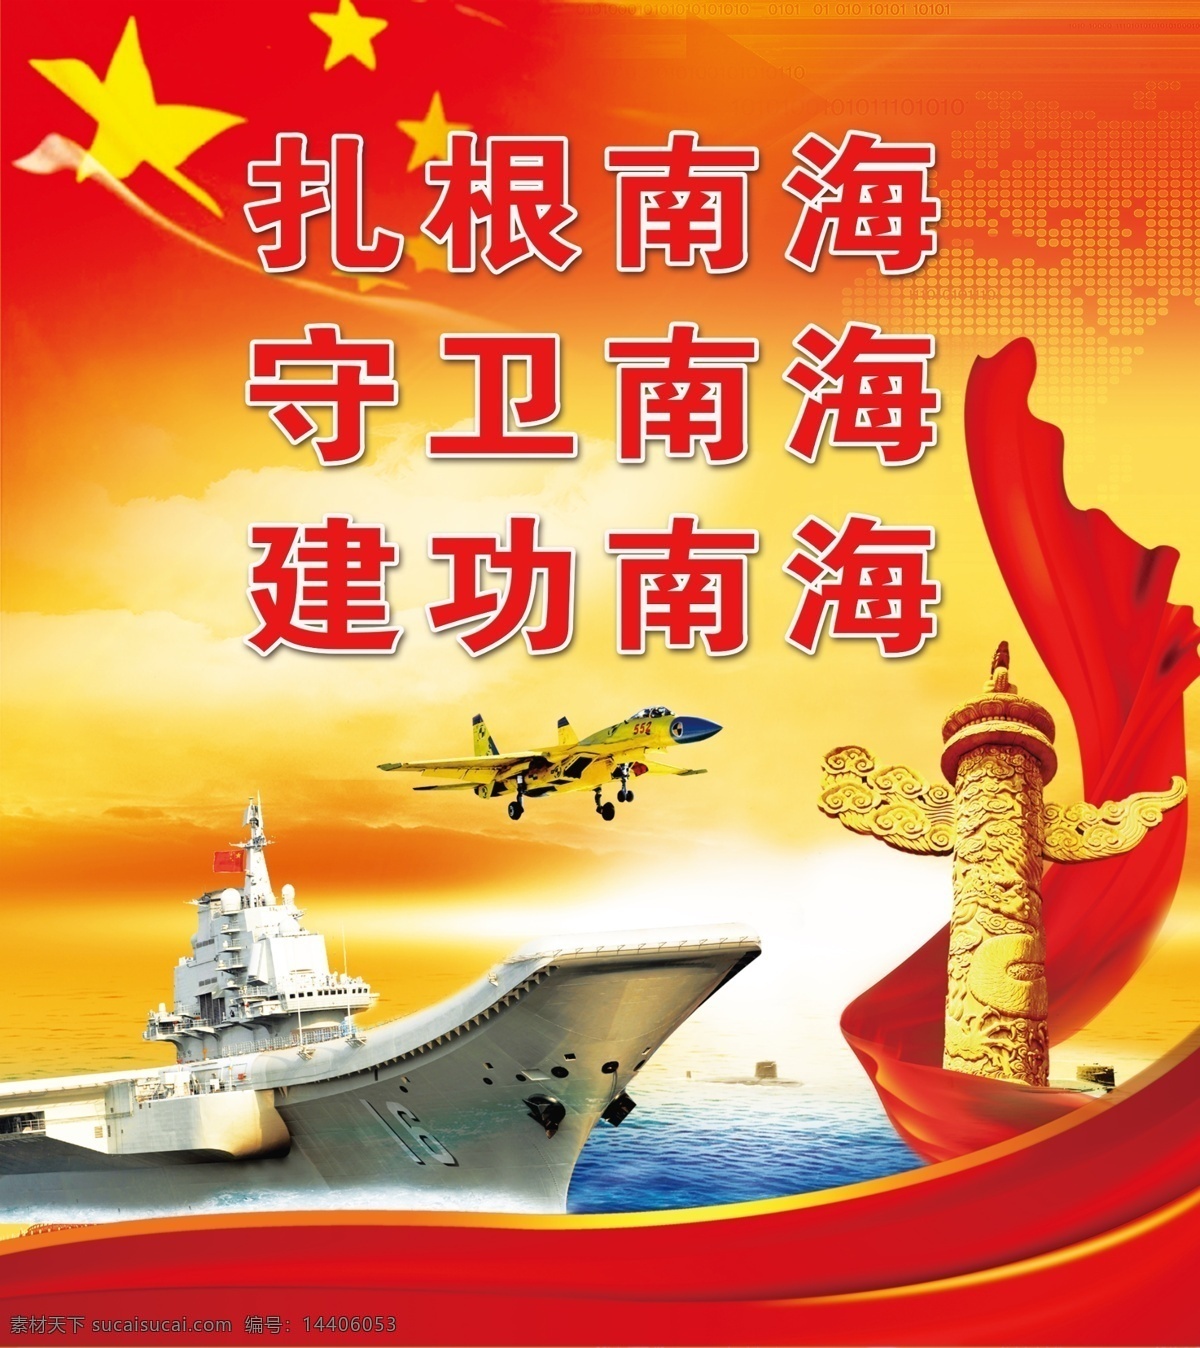 海军展板 海军宣传画 标语 战斗精神 大船 室外广告设计